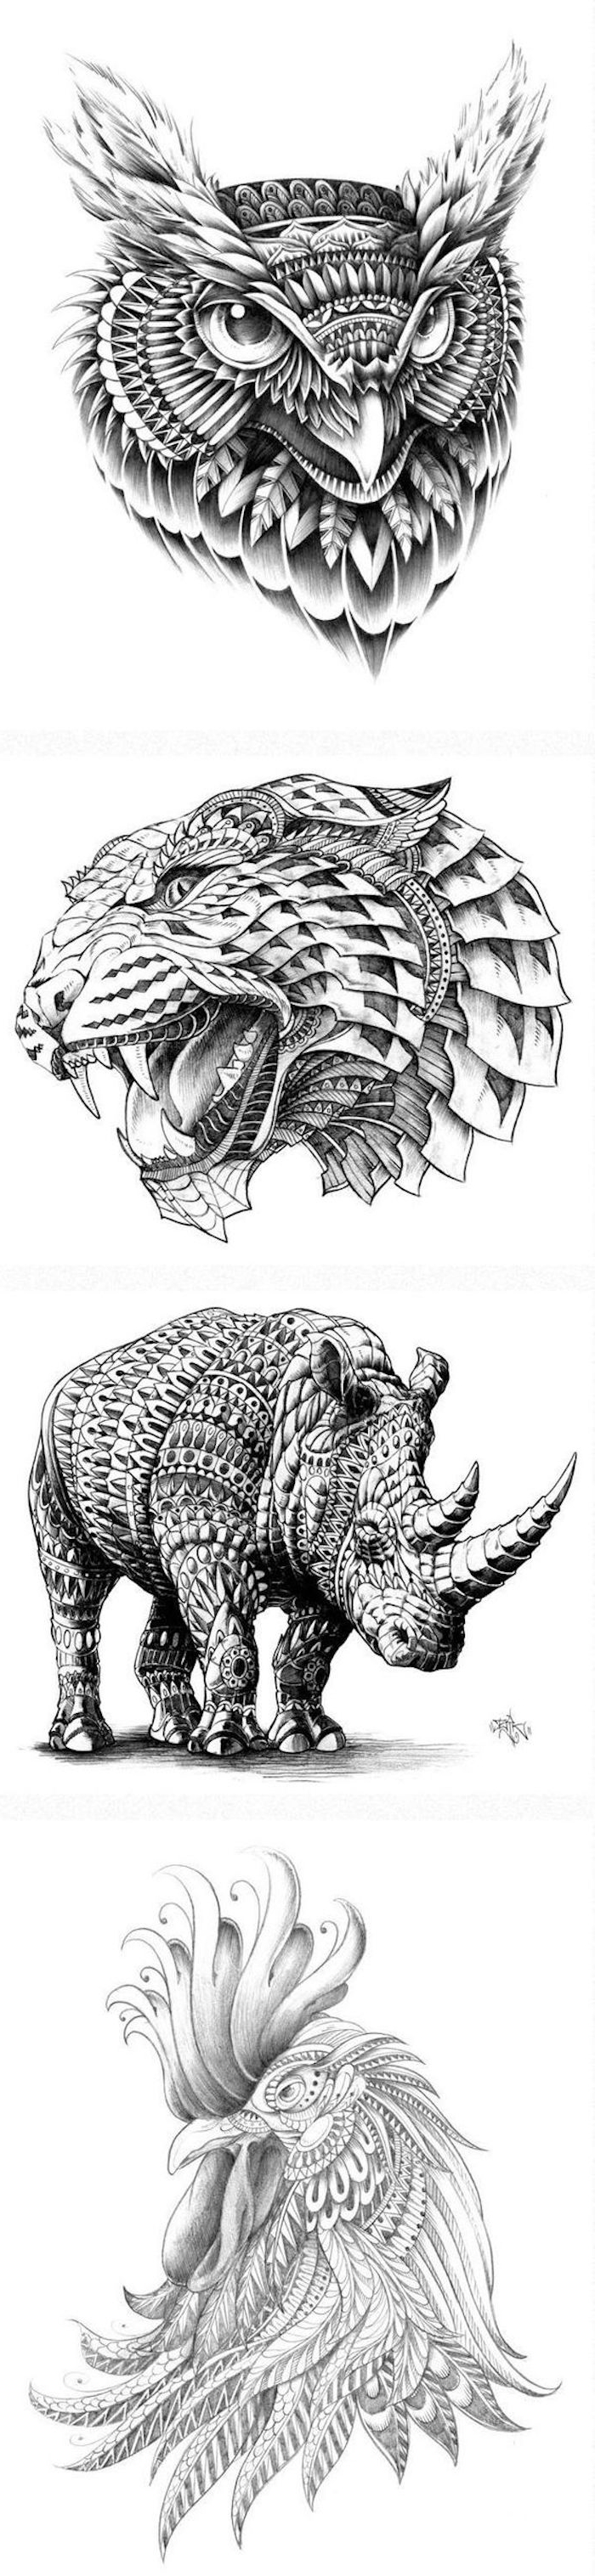 Aici veți găsi patru idei pentru tatuajele negre mari - un uhu, un leopard, un rinocer și un cocoș